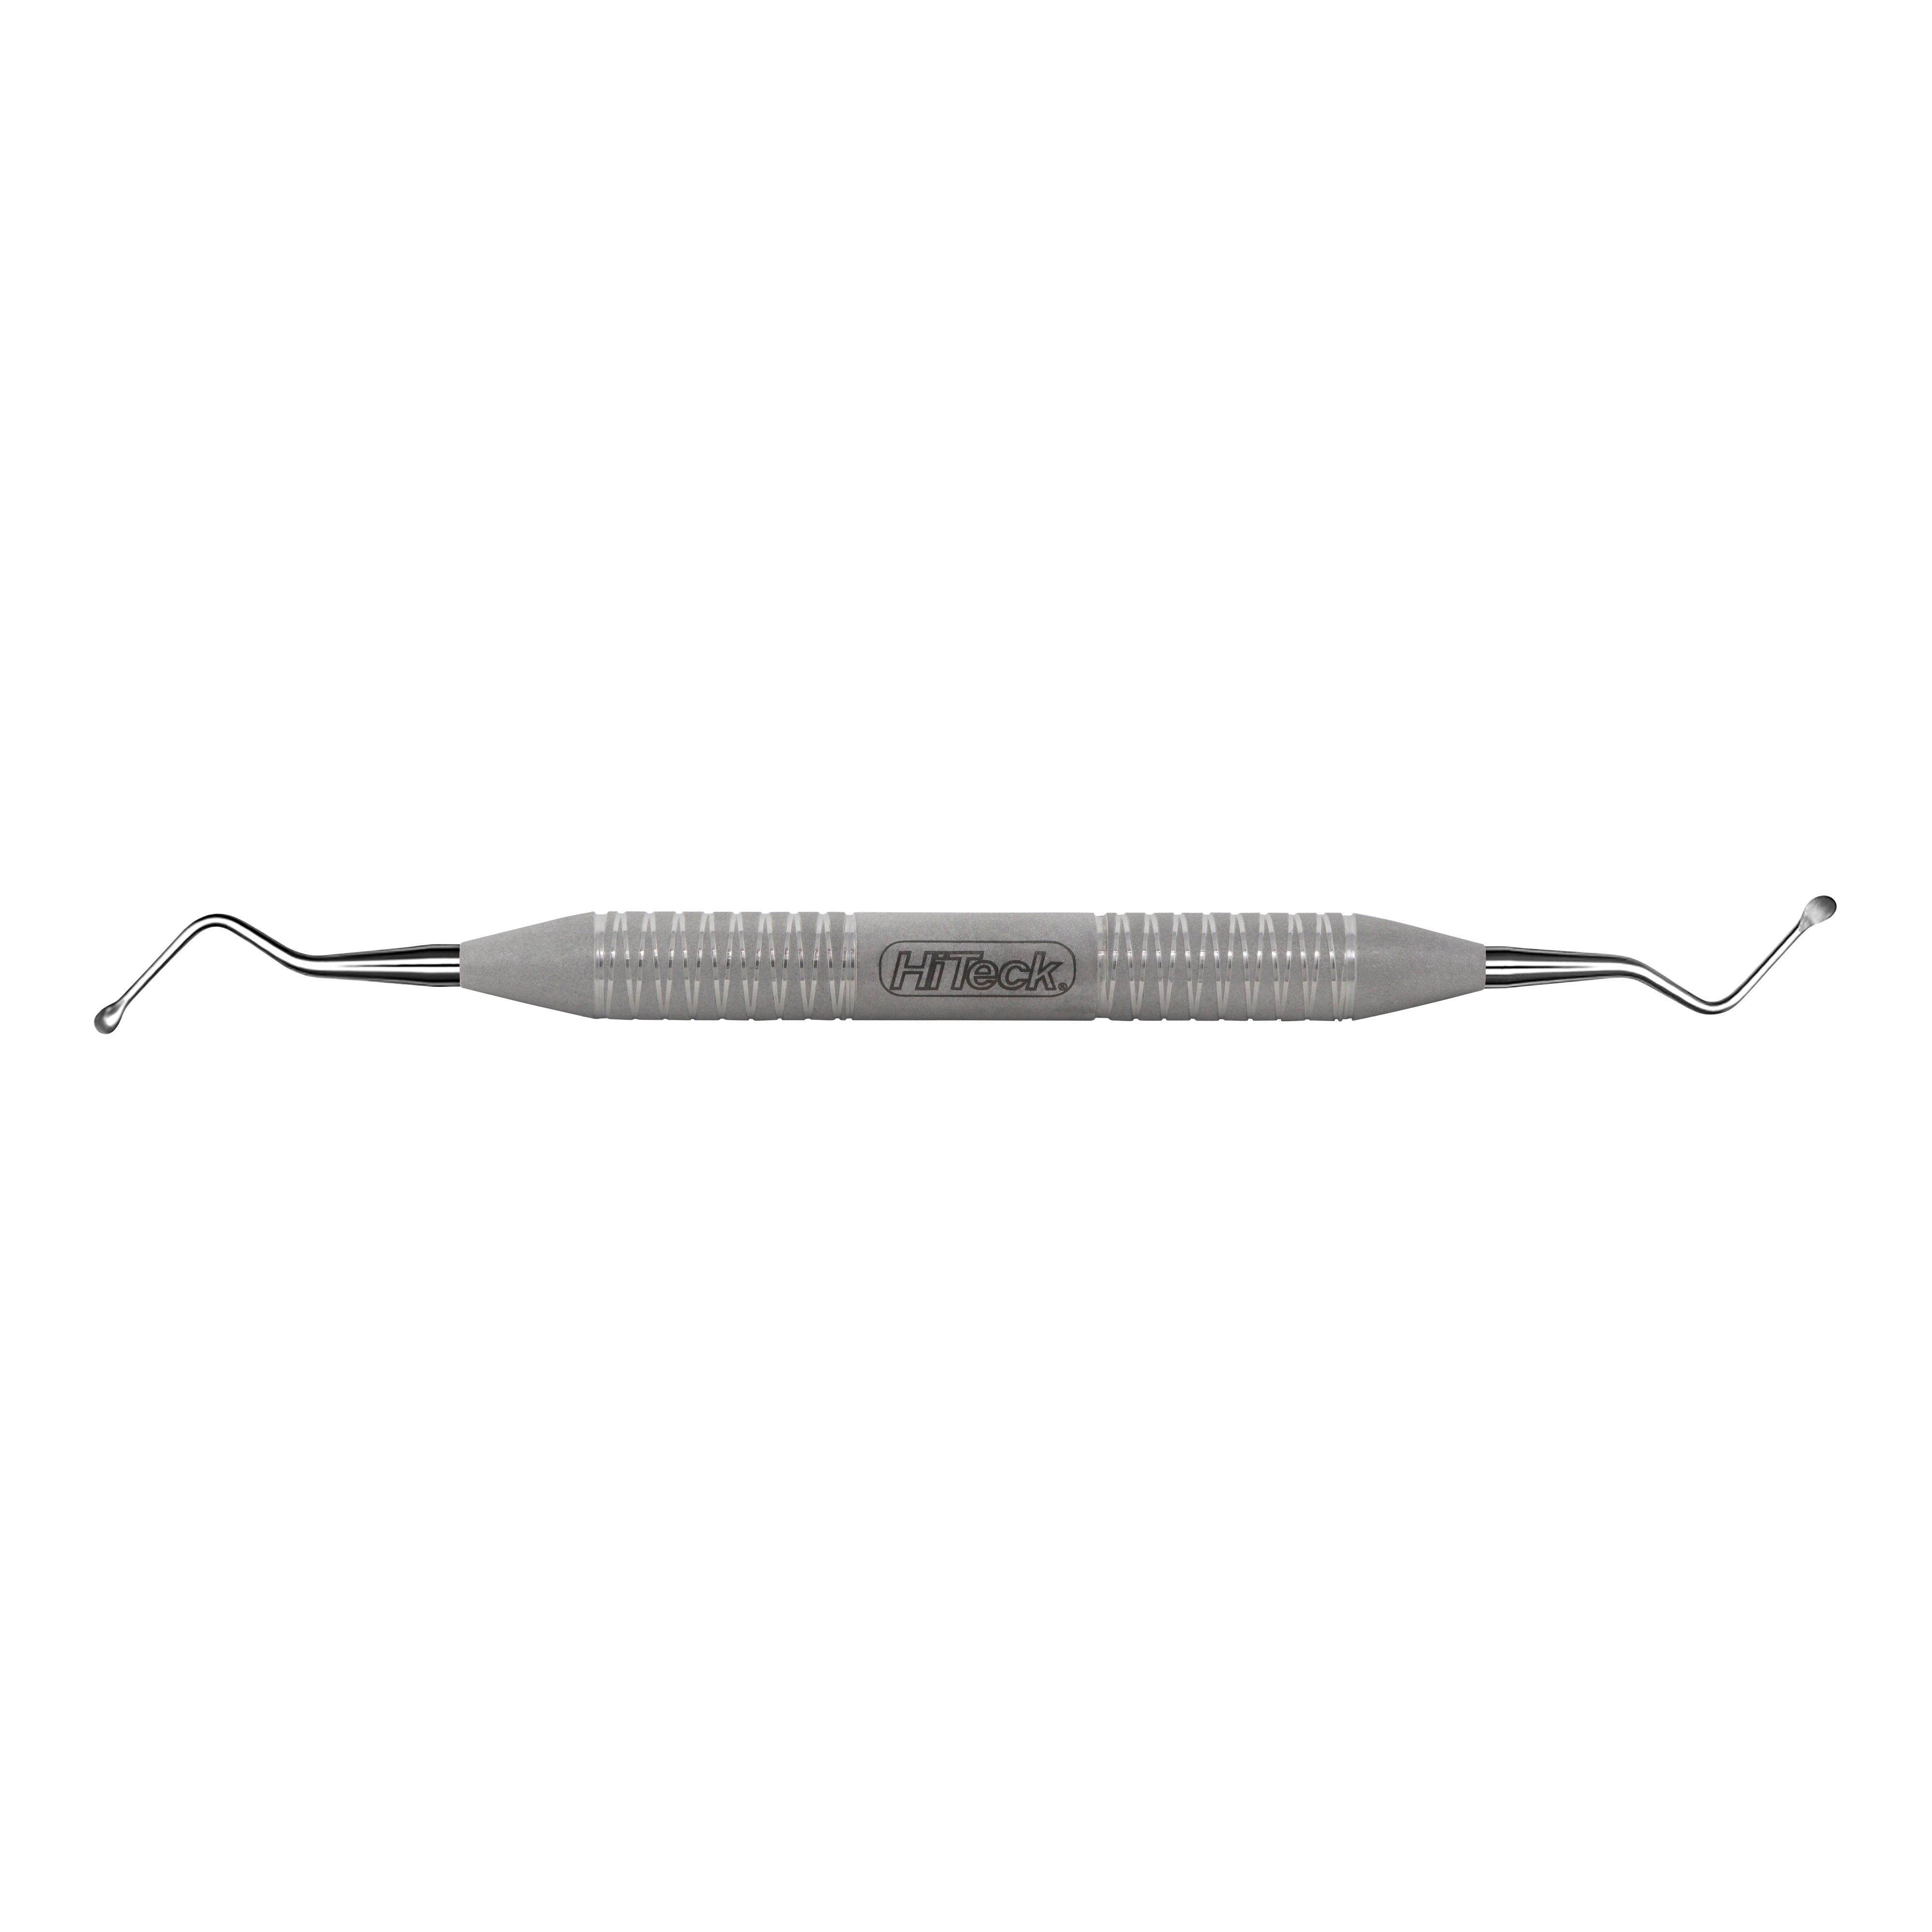 11 Miller Spoon Shape Surgical Curette, 3.6MM - HiTeck Medical Instruments